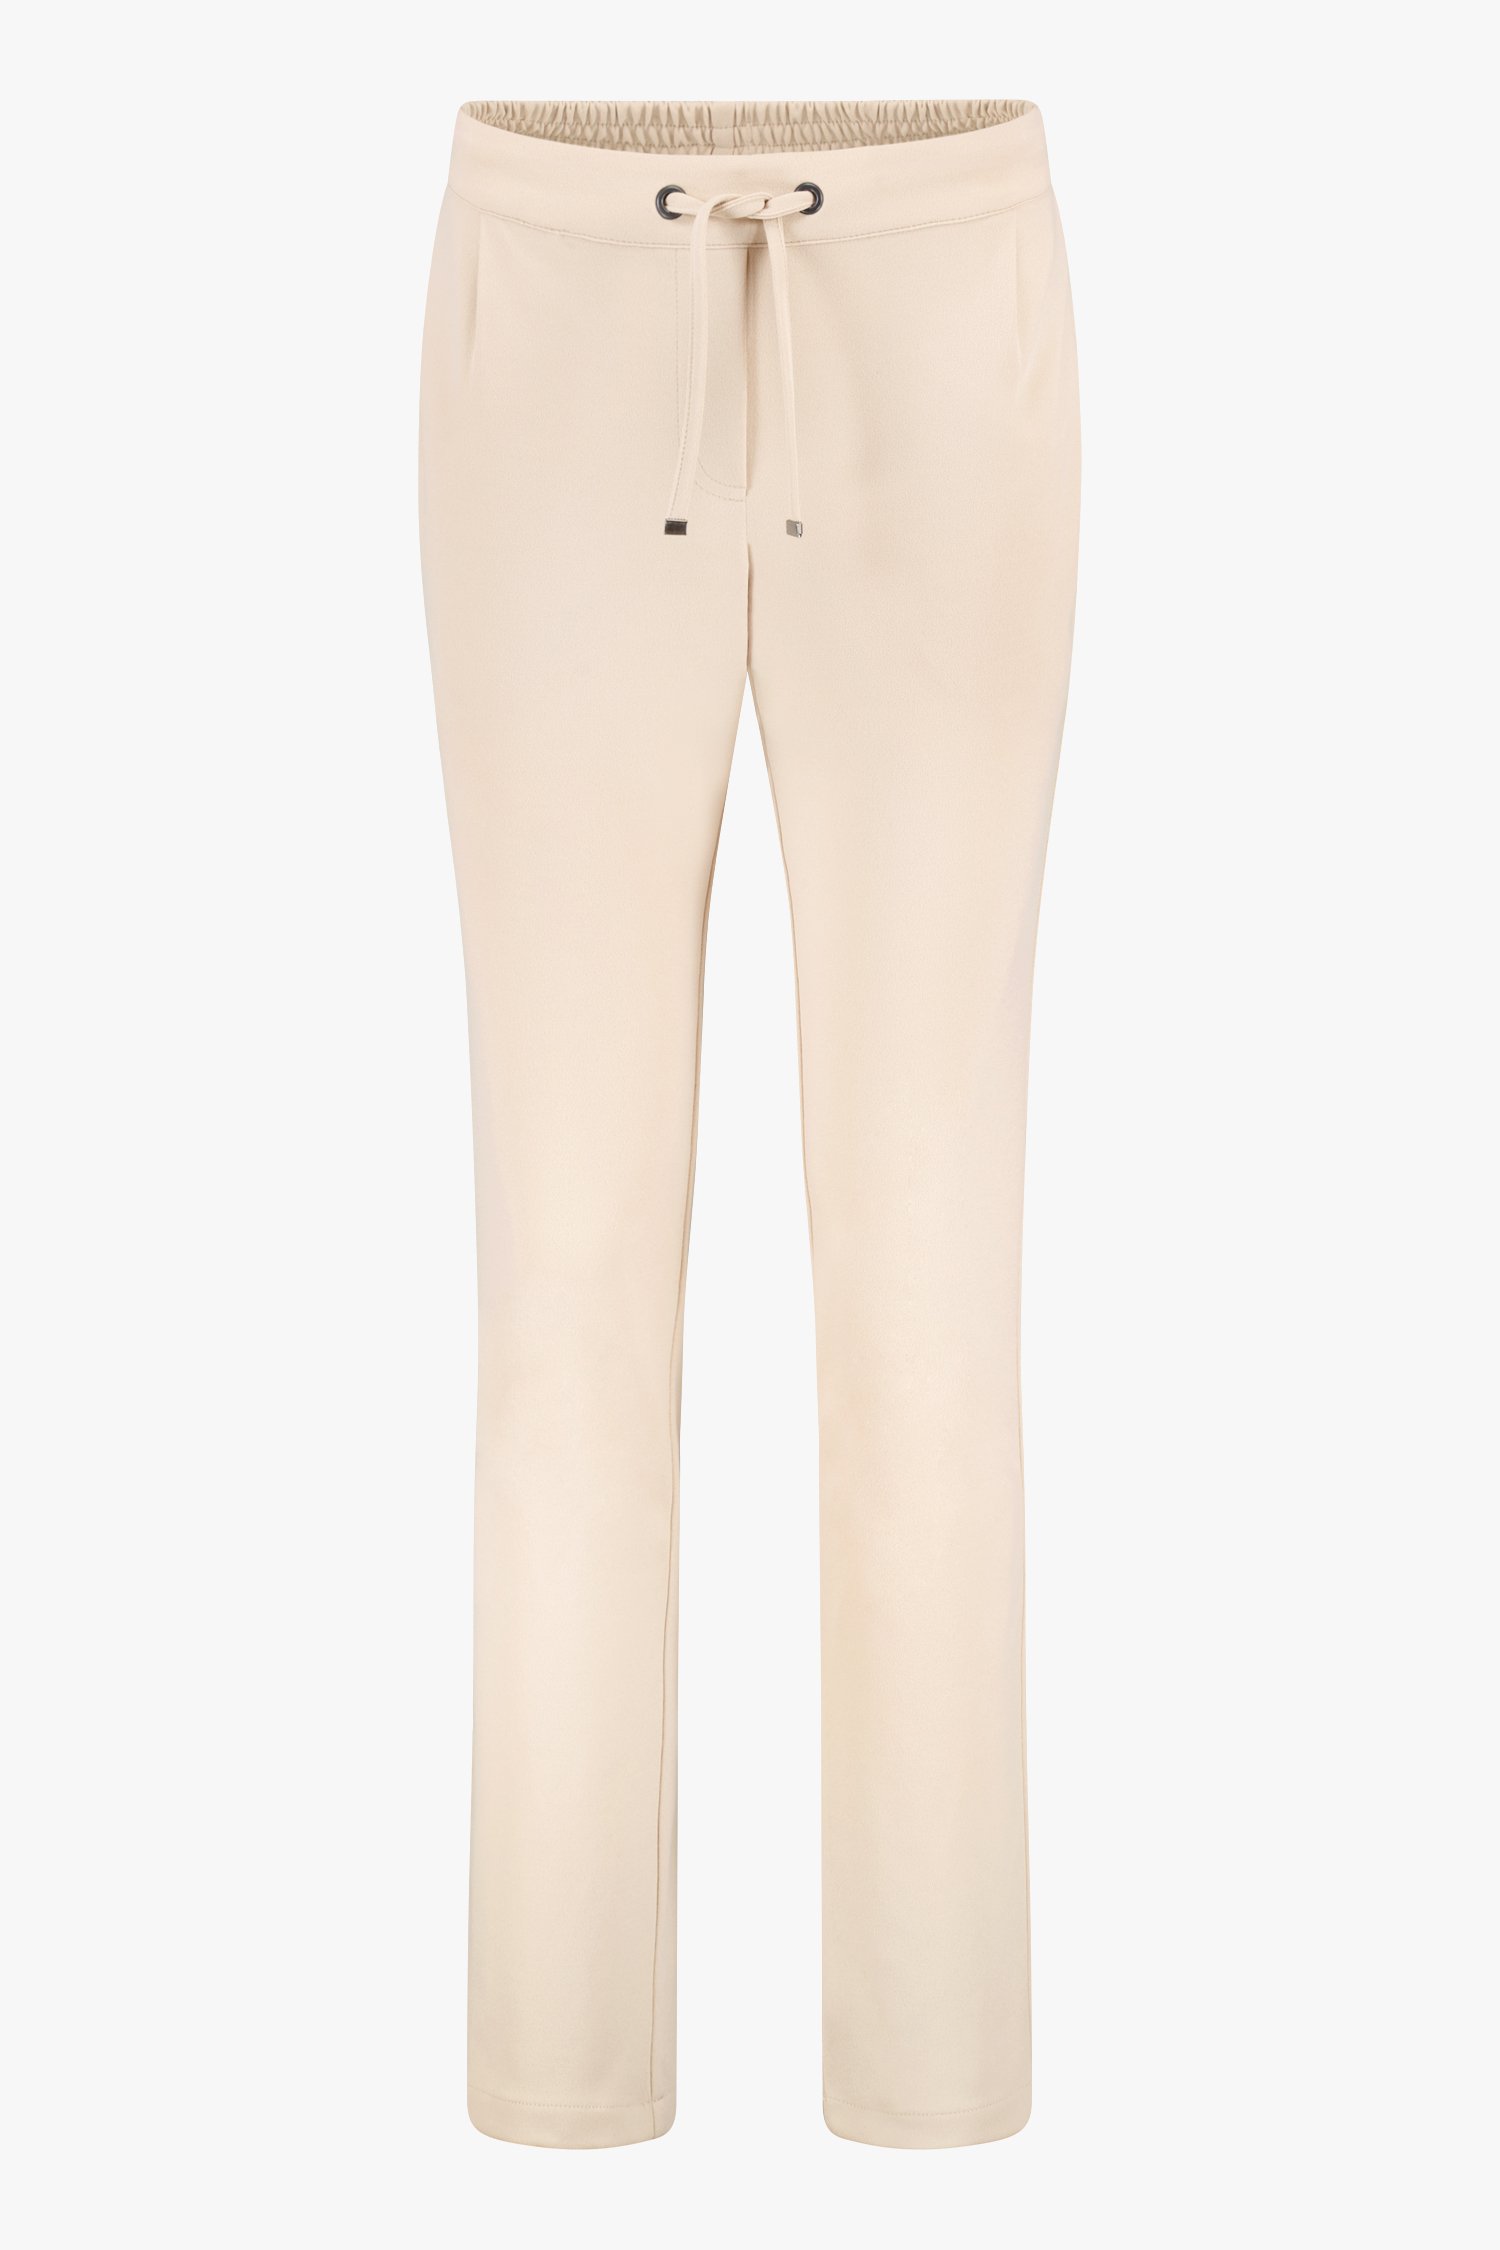 Beige broek met elastische taille - slim fit van Liberty Island voor Dames